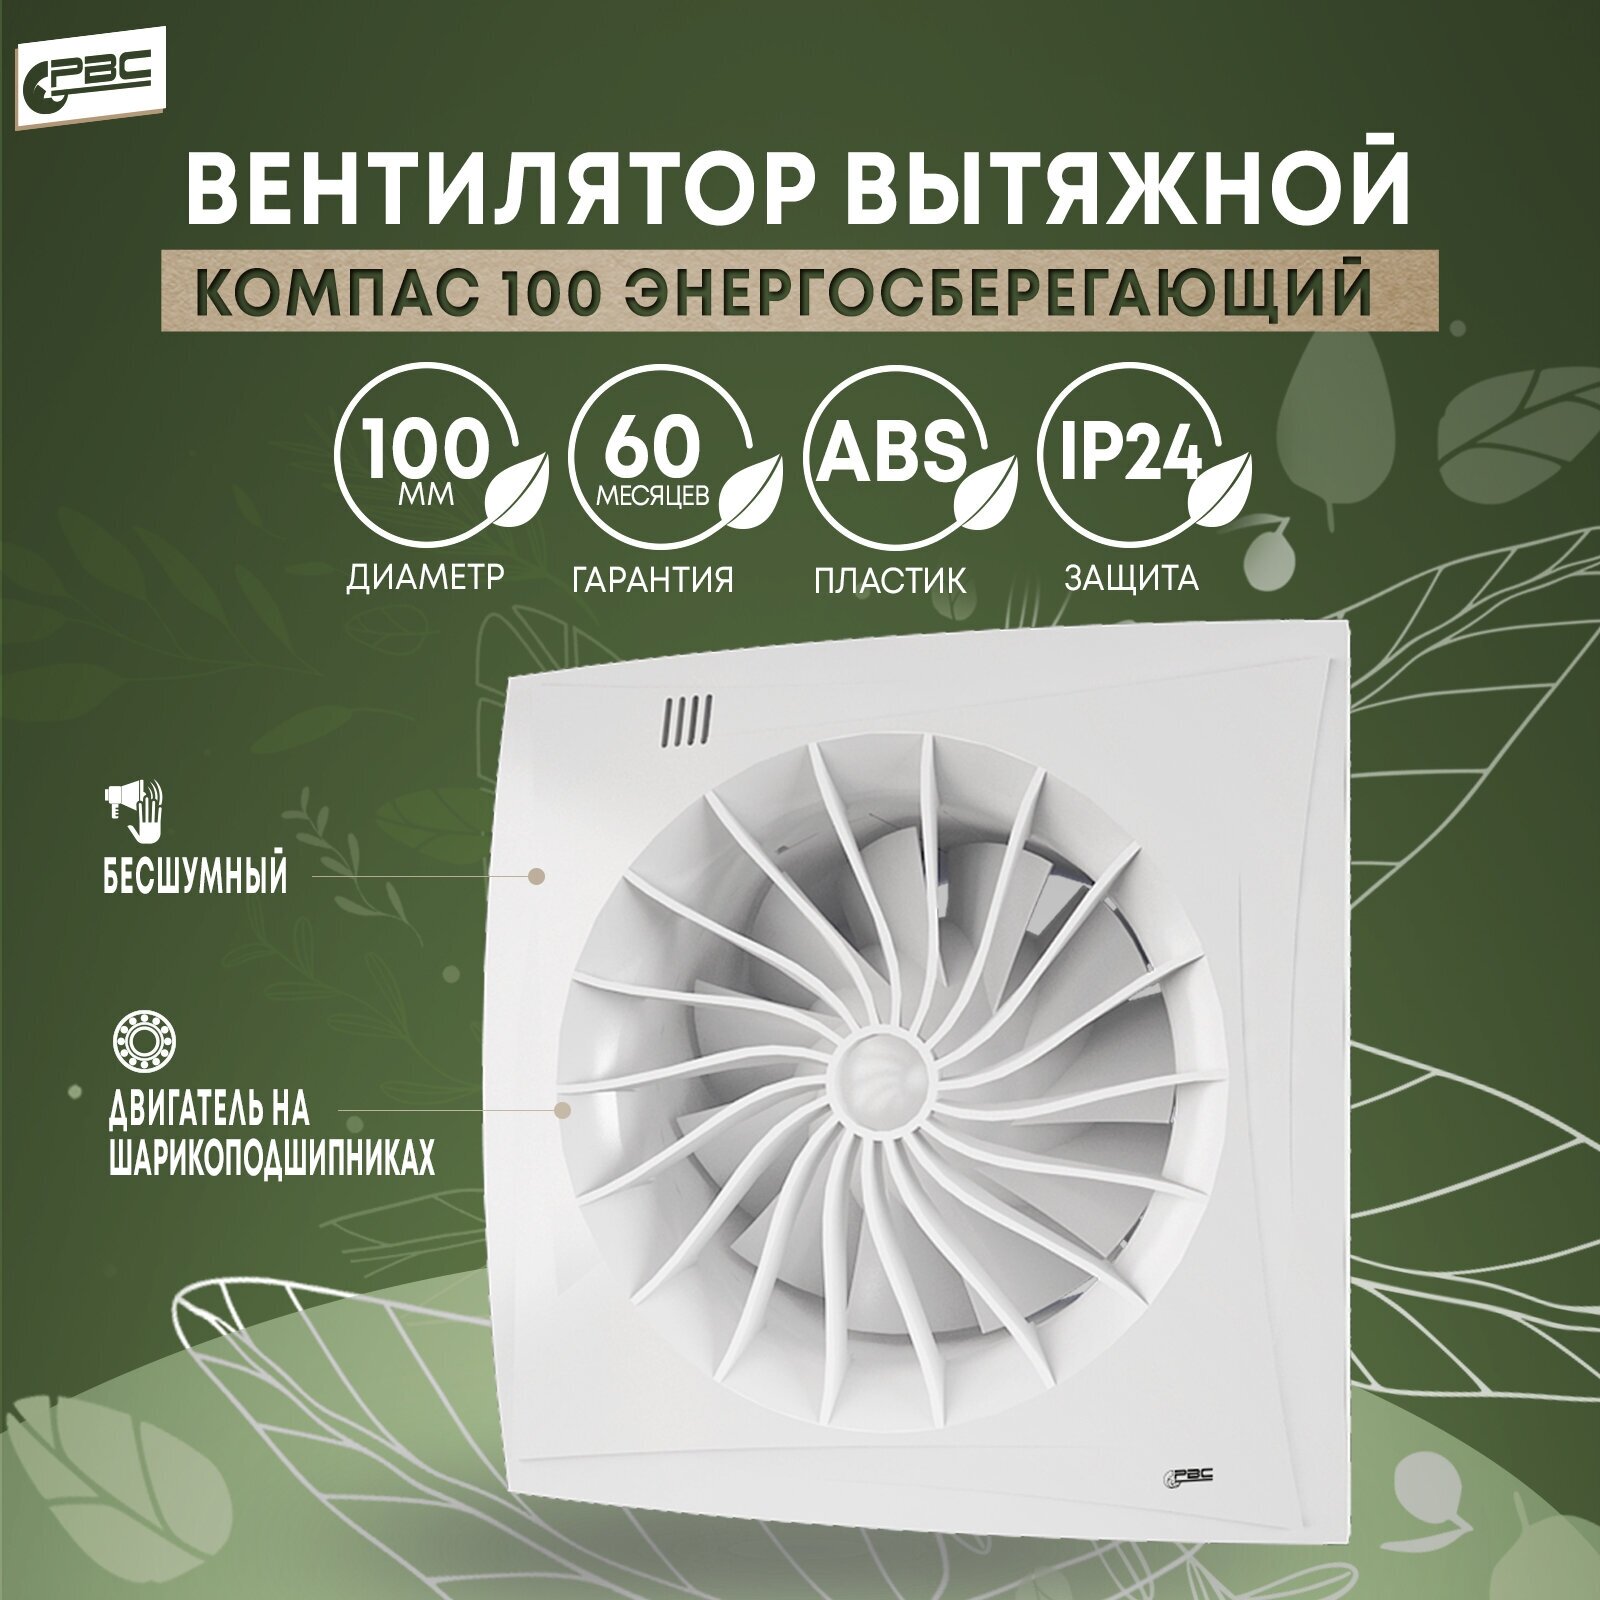 Вентилятор тихий вытяжной РВС Компас 100 энергосберегающий 8Вт 24дБ 95м3/ч